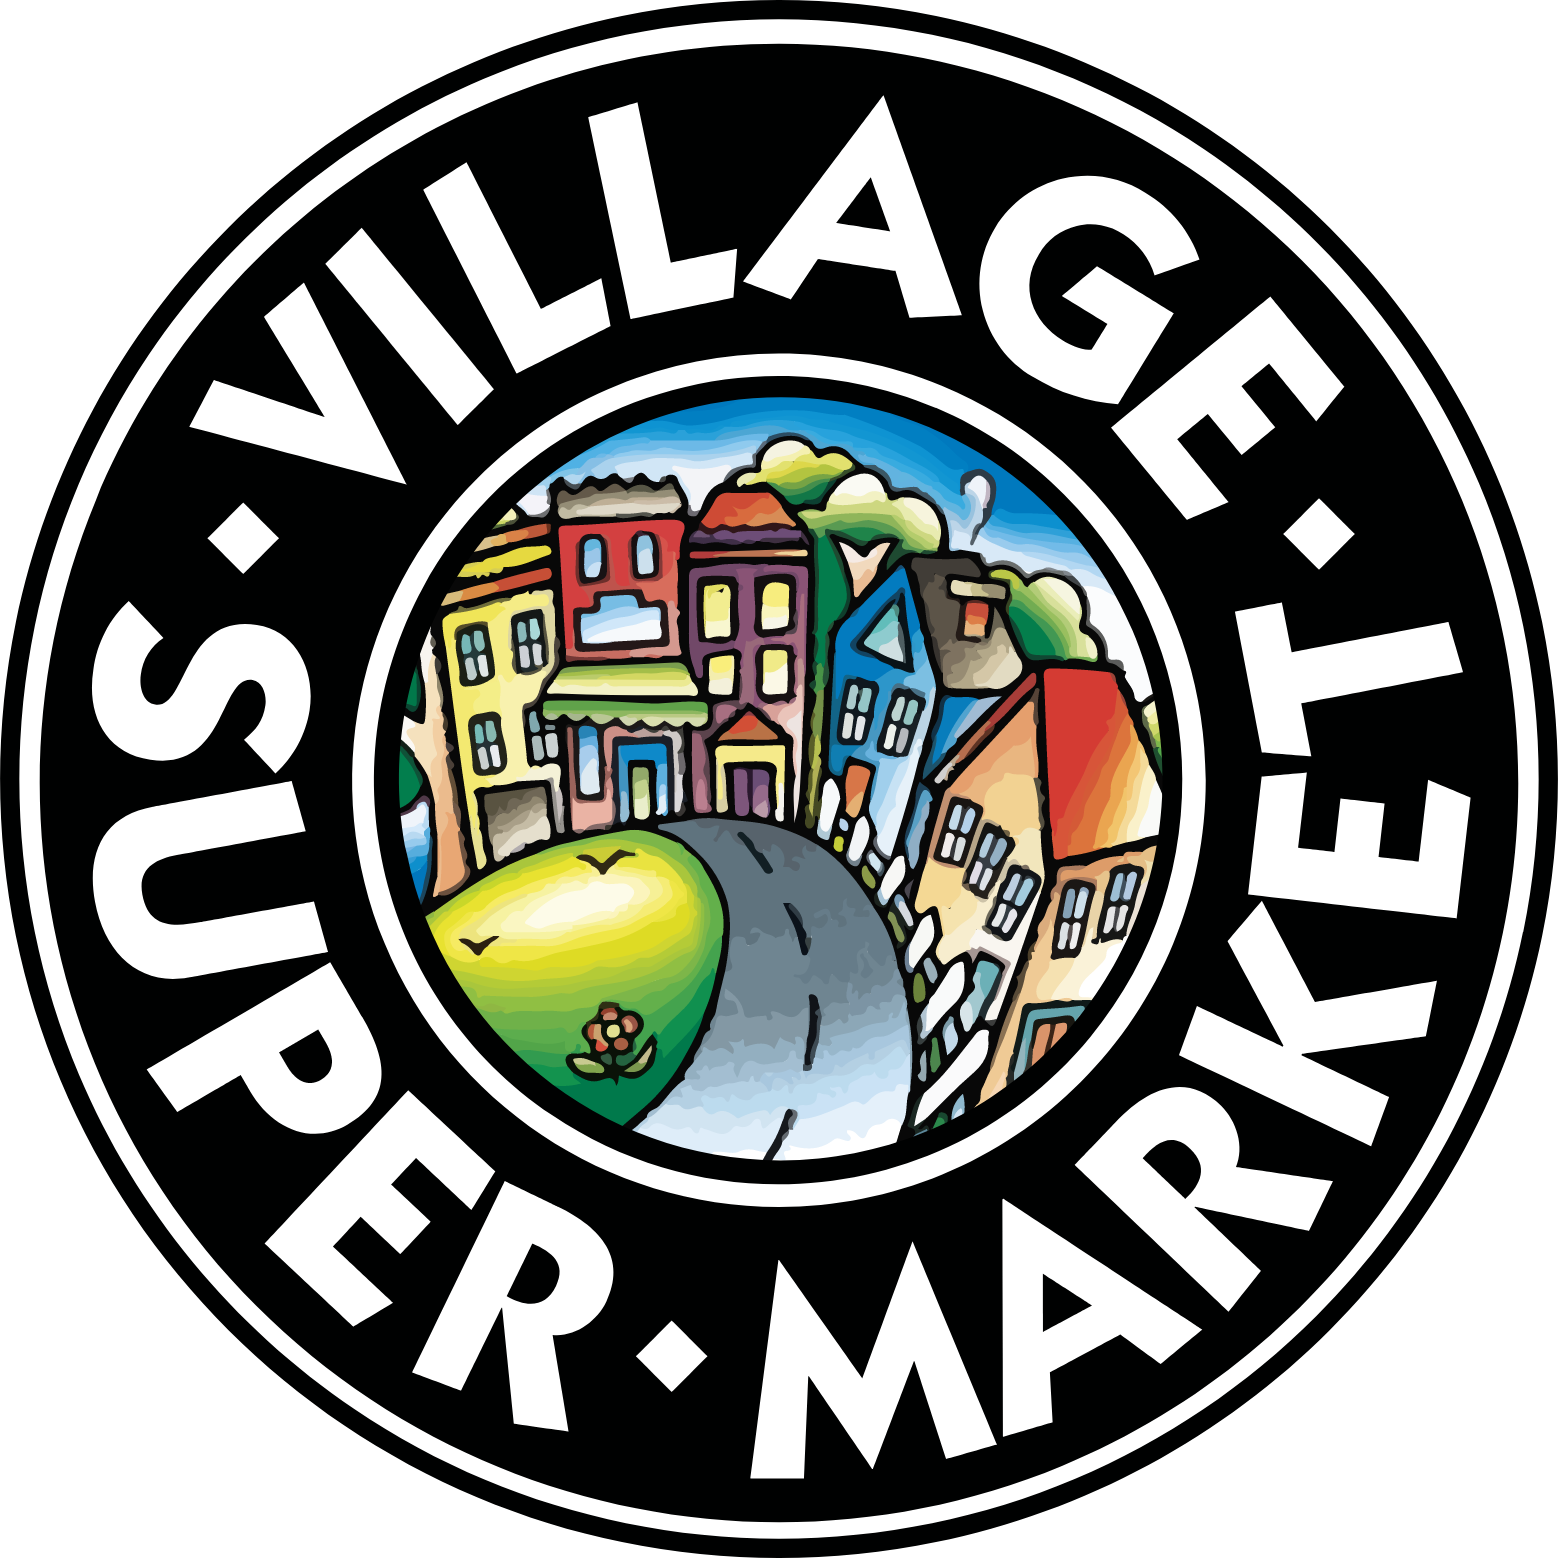 Village Super Market logo (transparent PNG)